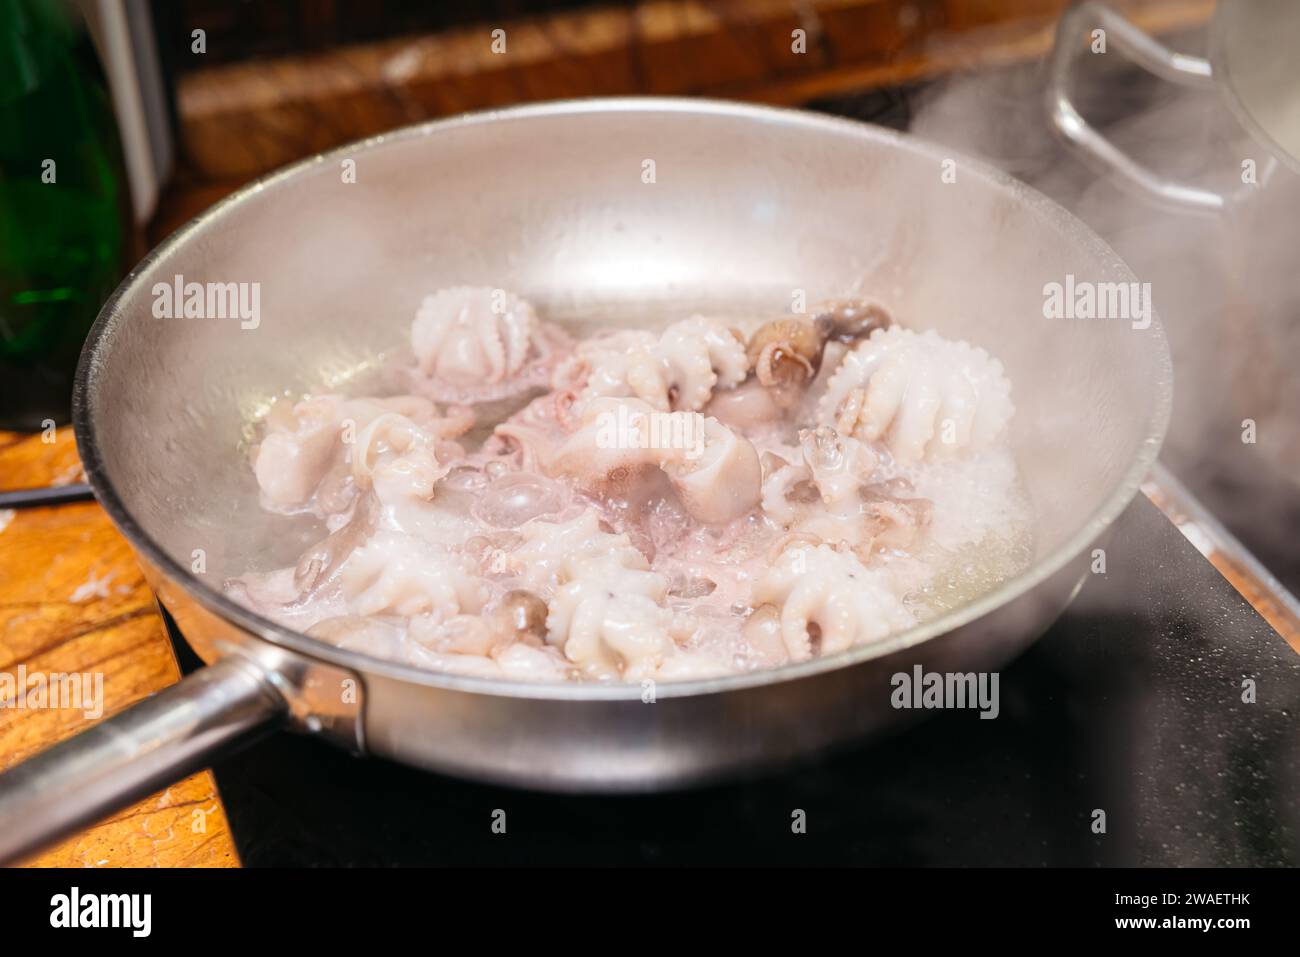 Una padella in acciaio inox sulla stufa con acqua bollente e polpo piccolo, un passo nella preparazione di un piatto a base di pesce. Foto Stock